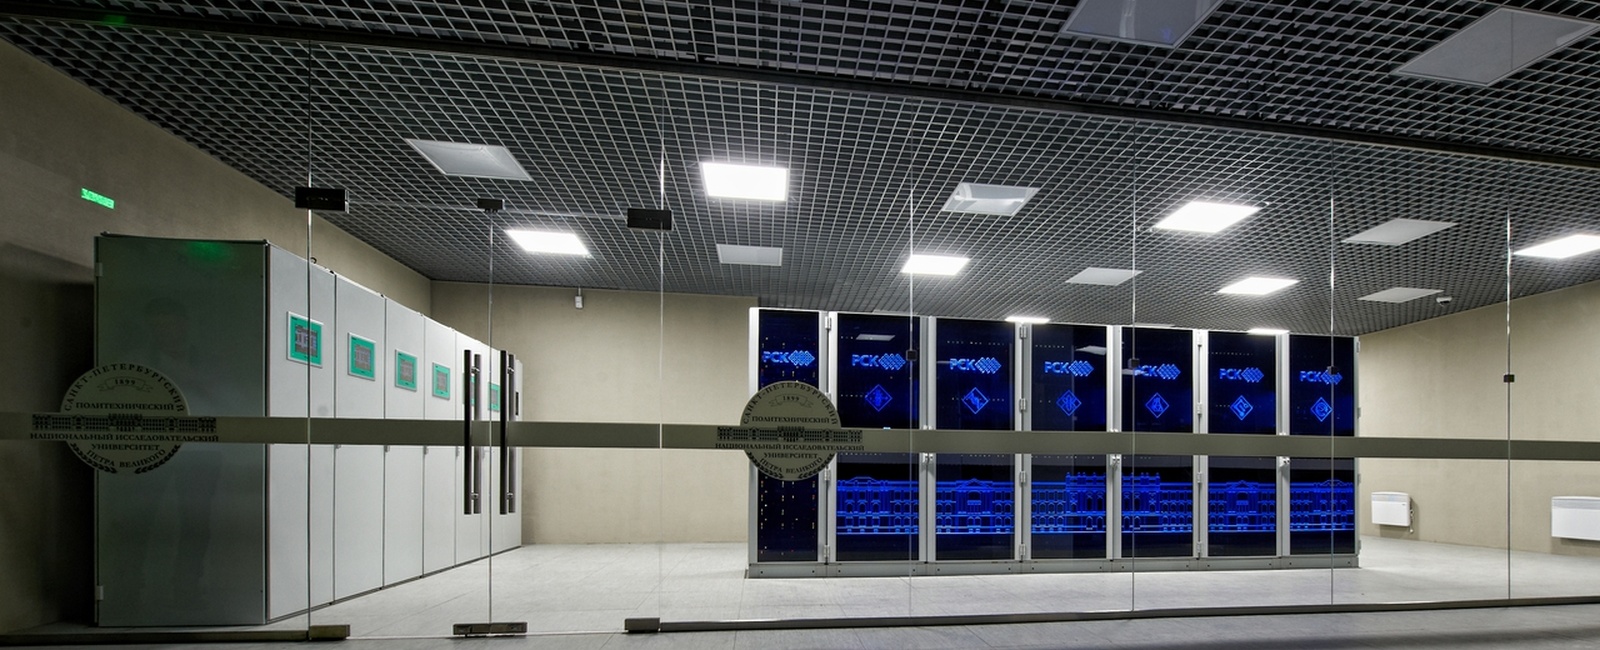 Суперкомпьютерный центр Политехнический